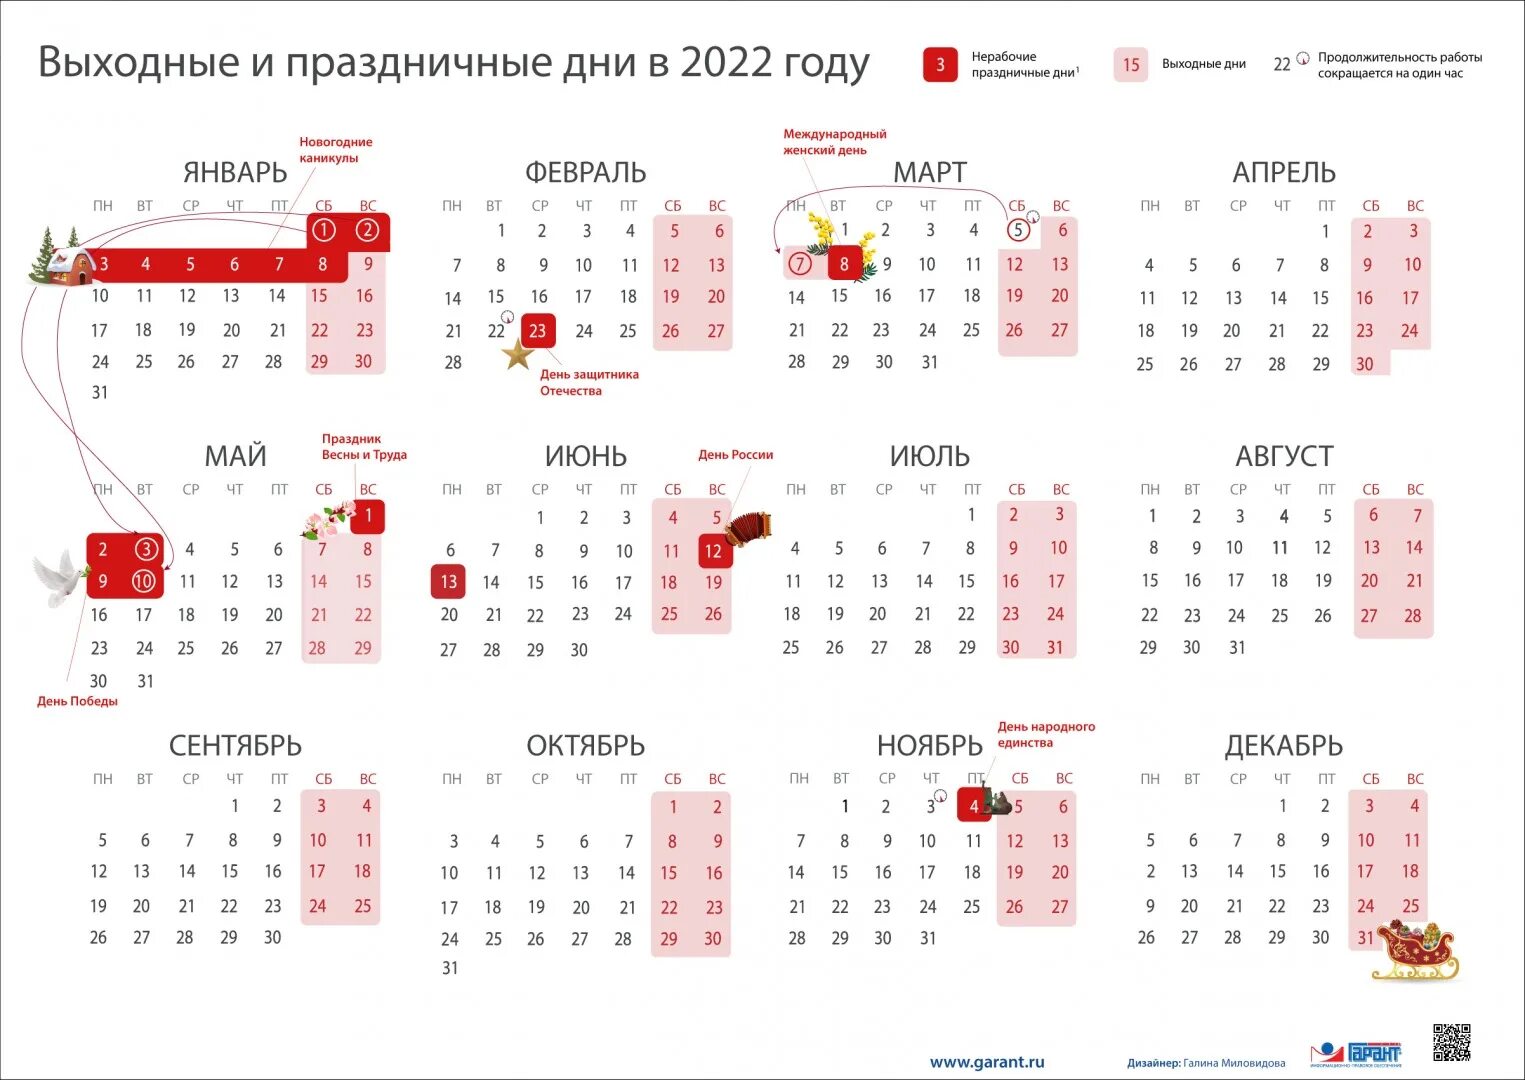 Выходные в россии в год. Календарь выходных и праздничных дней на 2022 год в России. Перенос праздников 2022 год утвержденный правительством РФ. Выходные и праздники в 2022 года в России нерабочие дни календарь. Выходные дни в мае 2022 года в России.